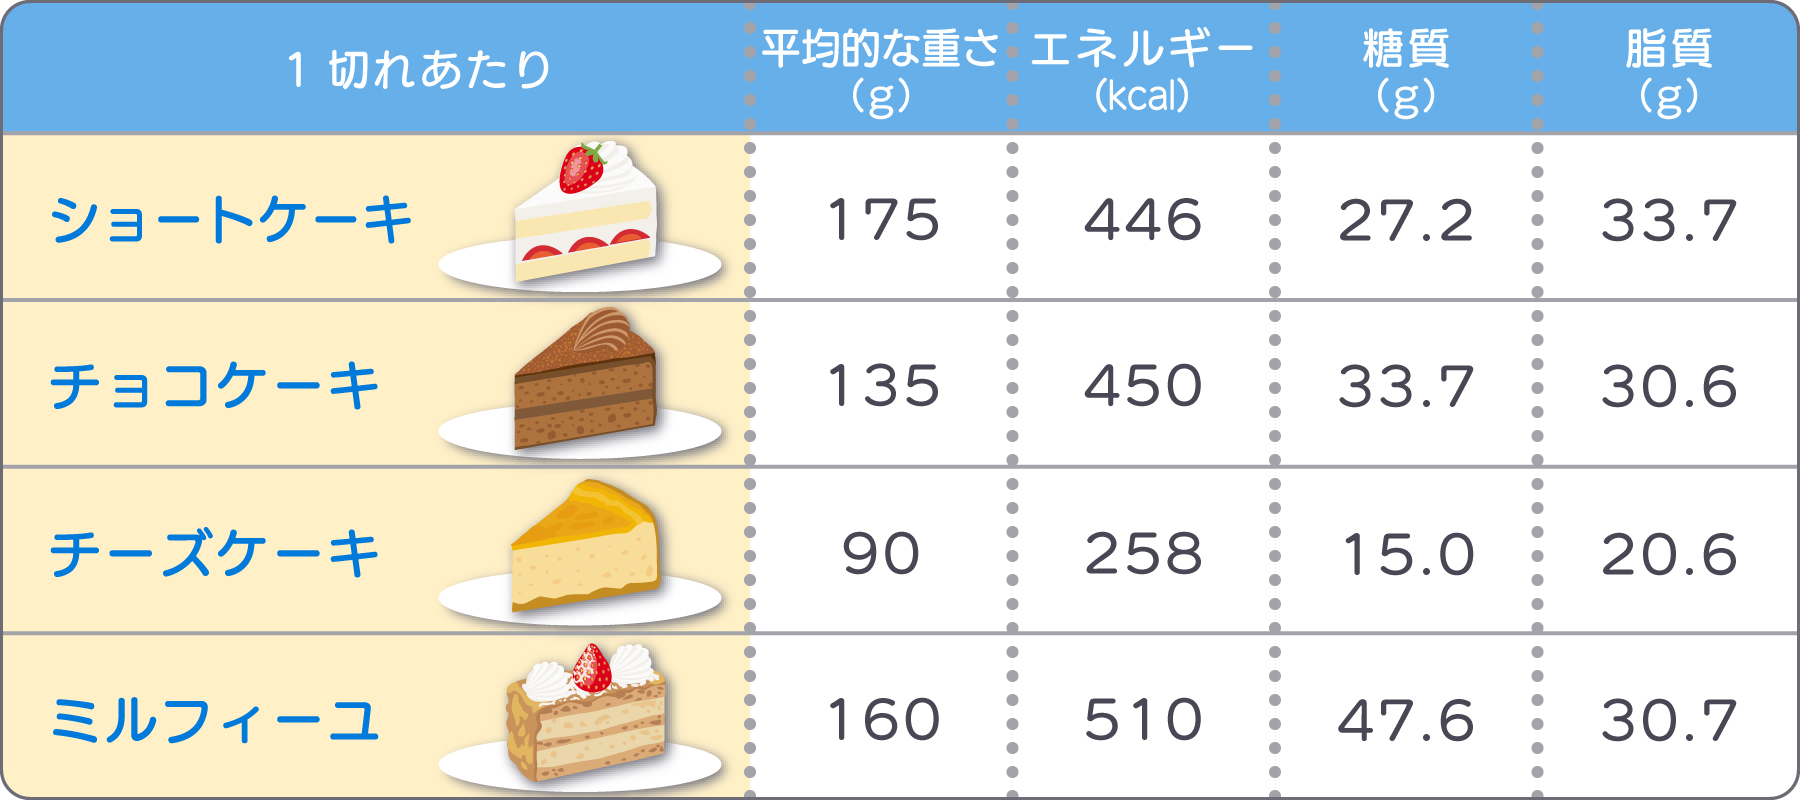 ケーキ4種の栄養素を比較できる表